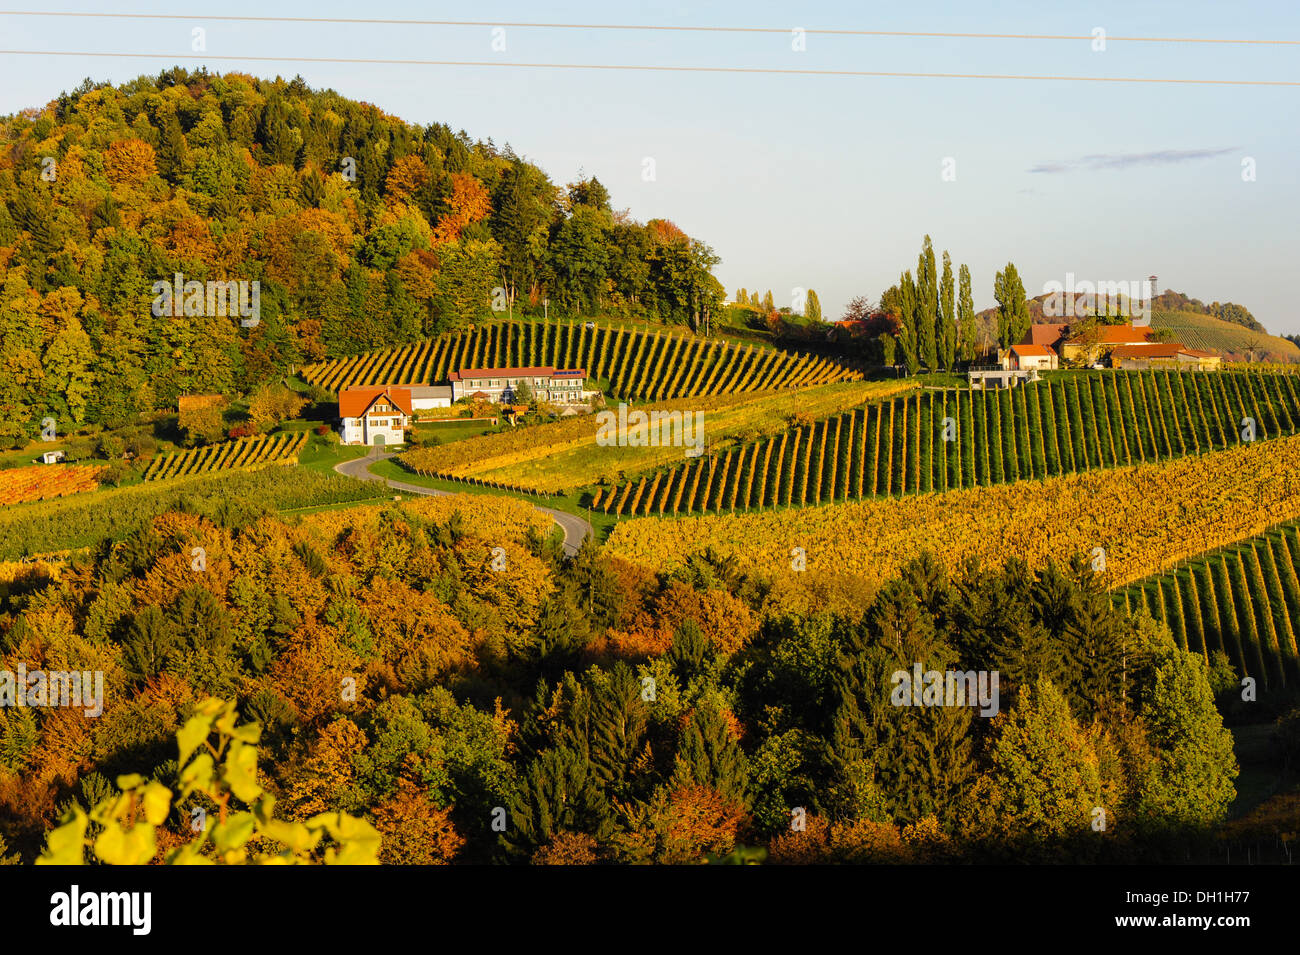 Suedsteirische Weinstrasse, Southern Styria wine route in autumn, Austria, Styria, Southern Styria, Gabersdorf Stock Photo